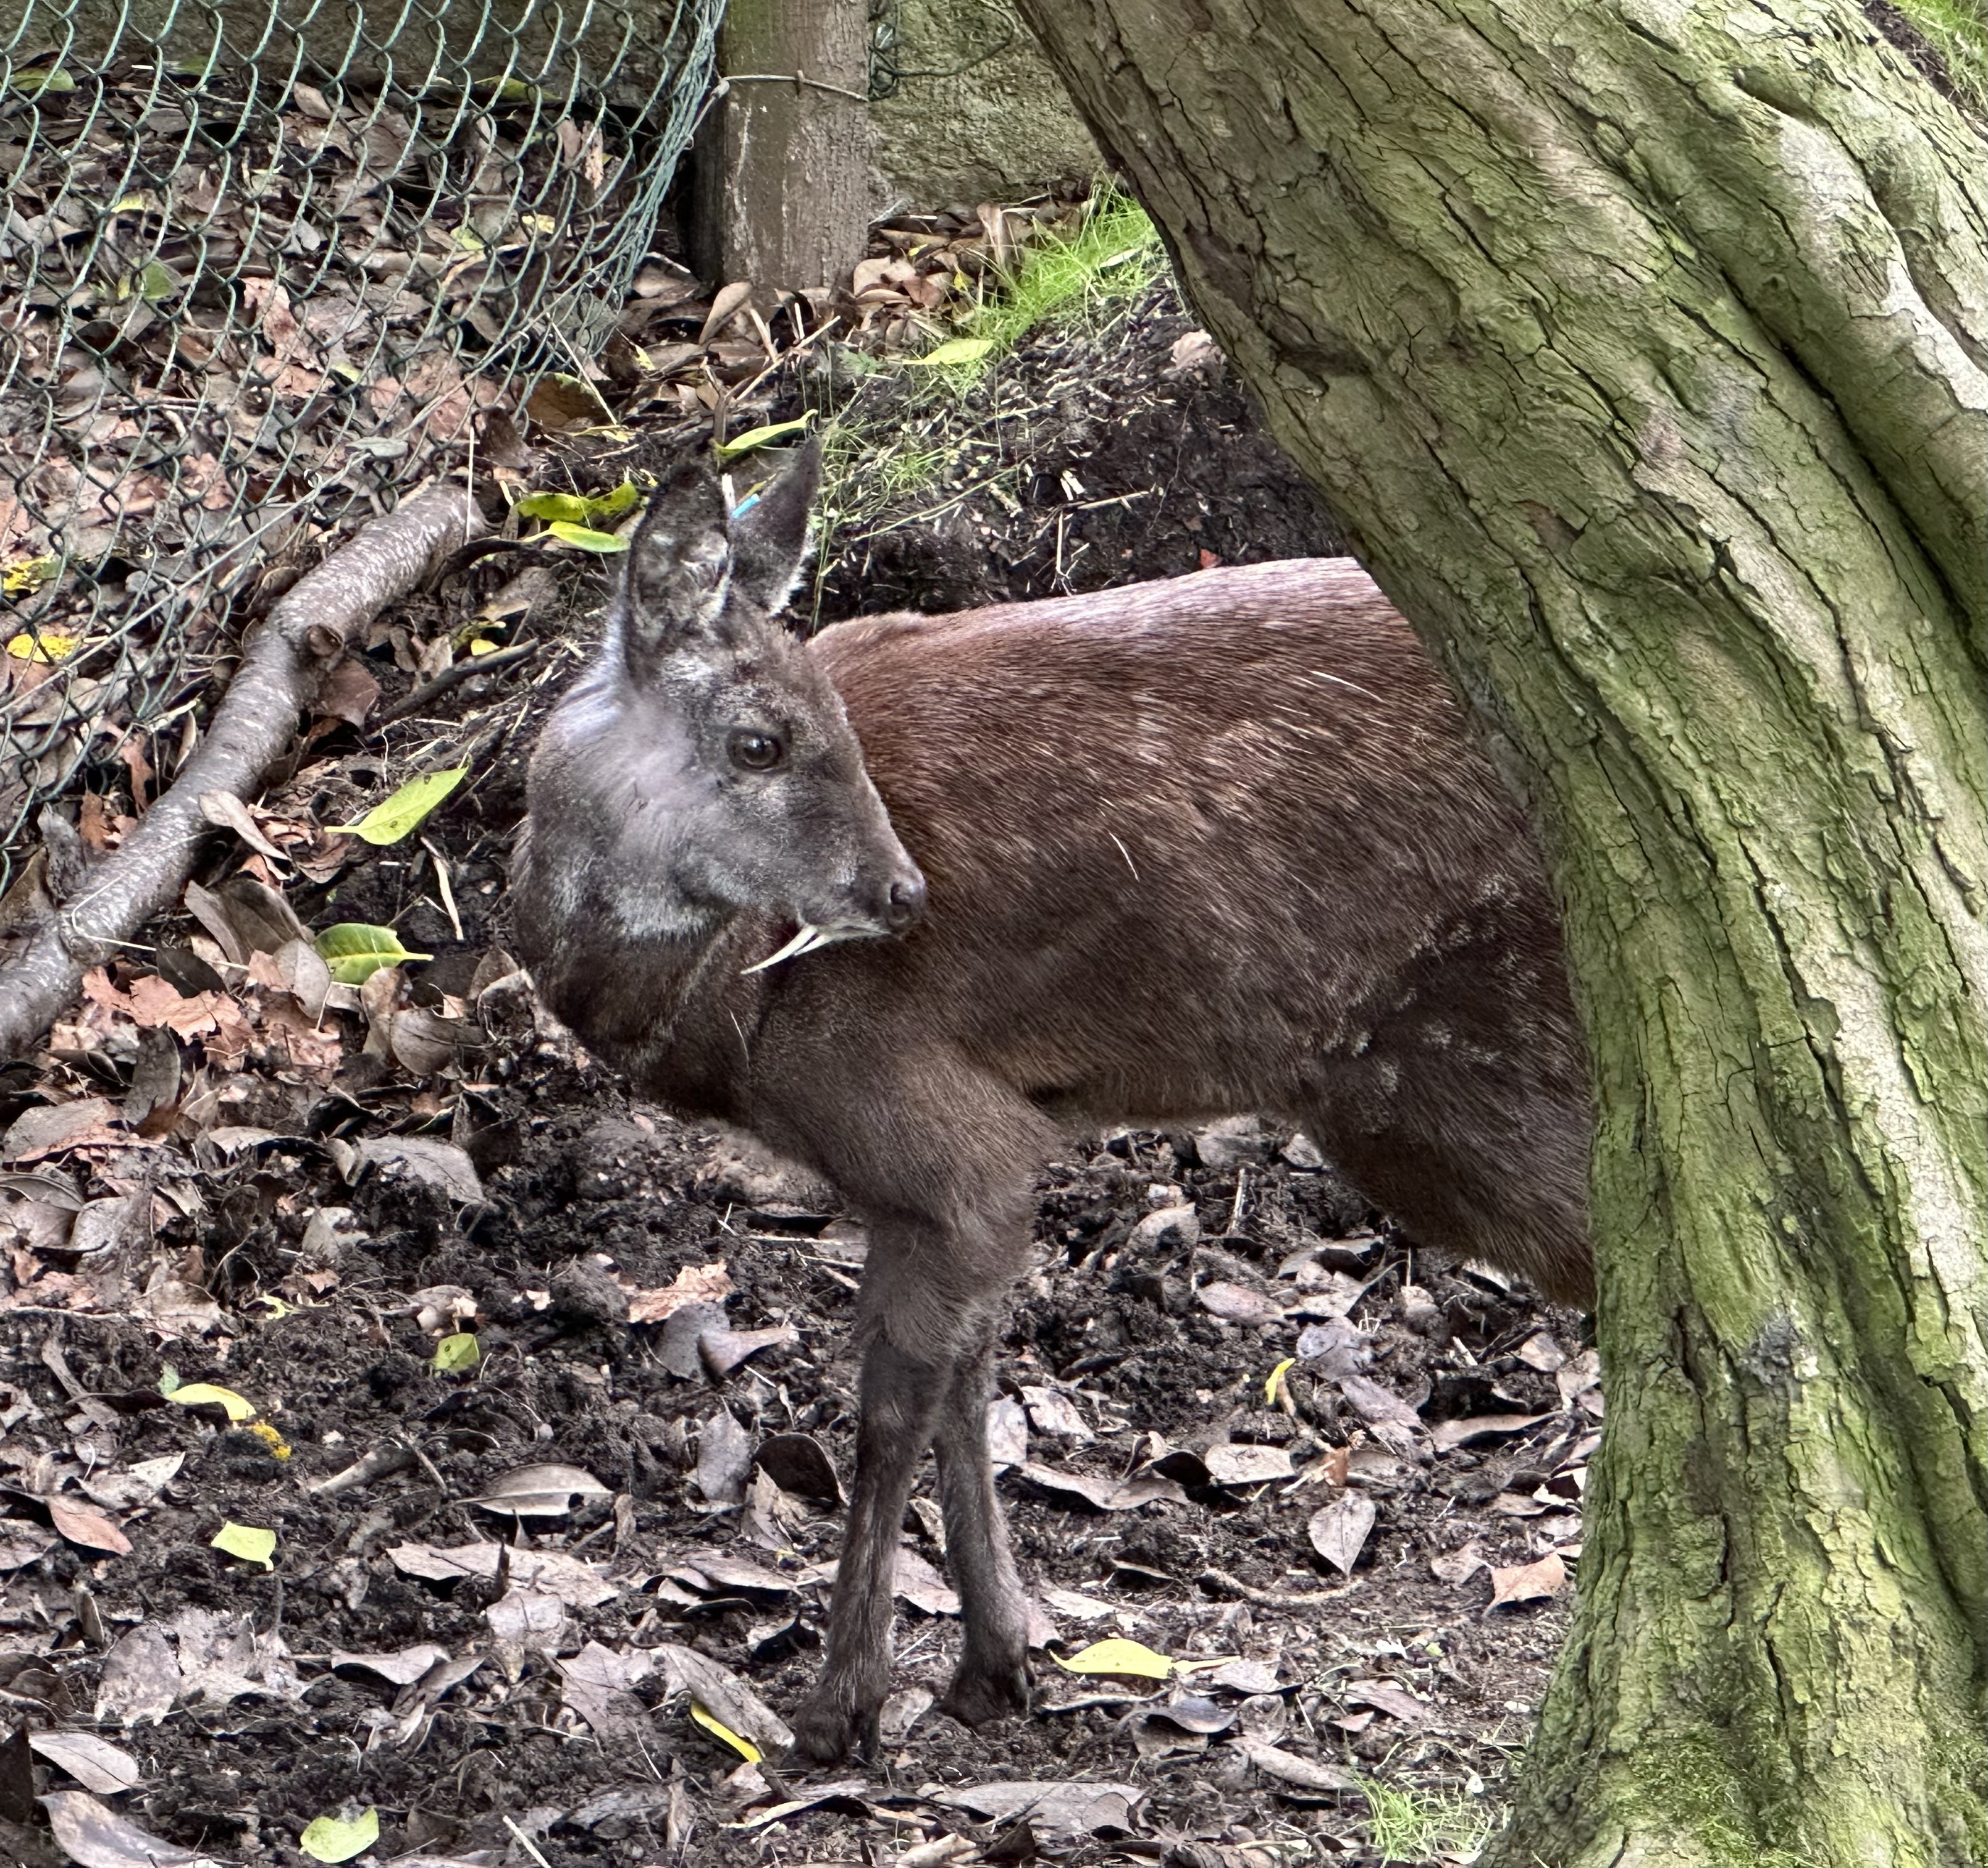 Musk deer in Edinburgh Zoo